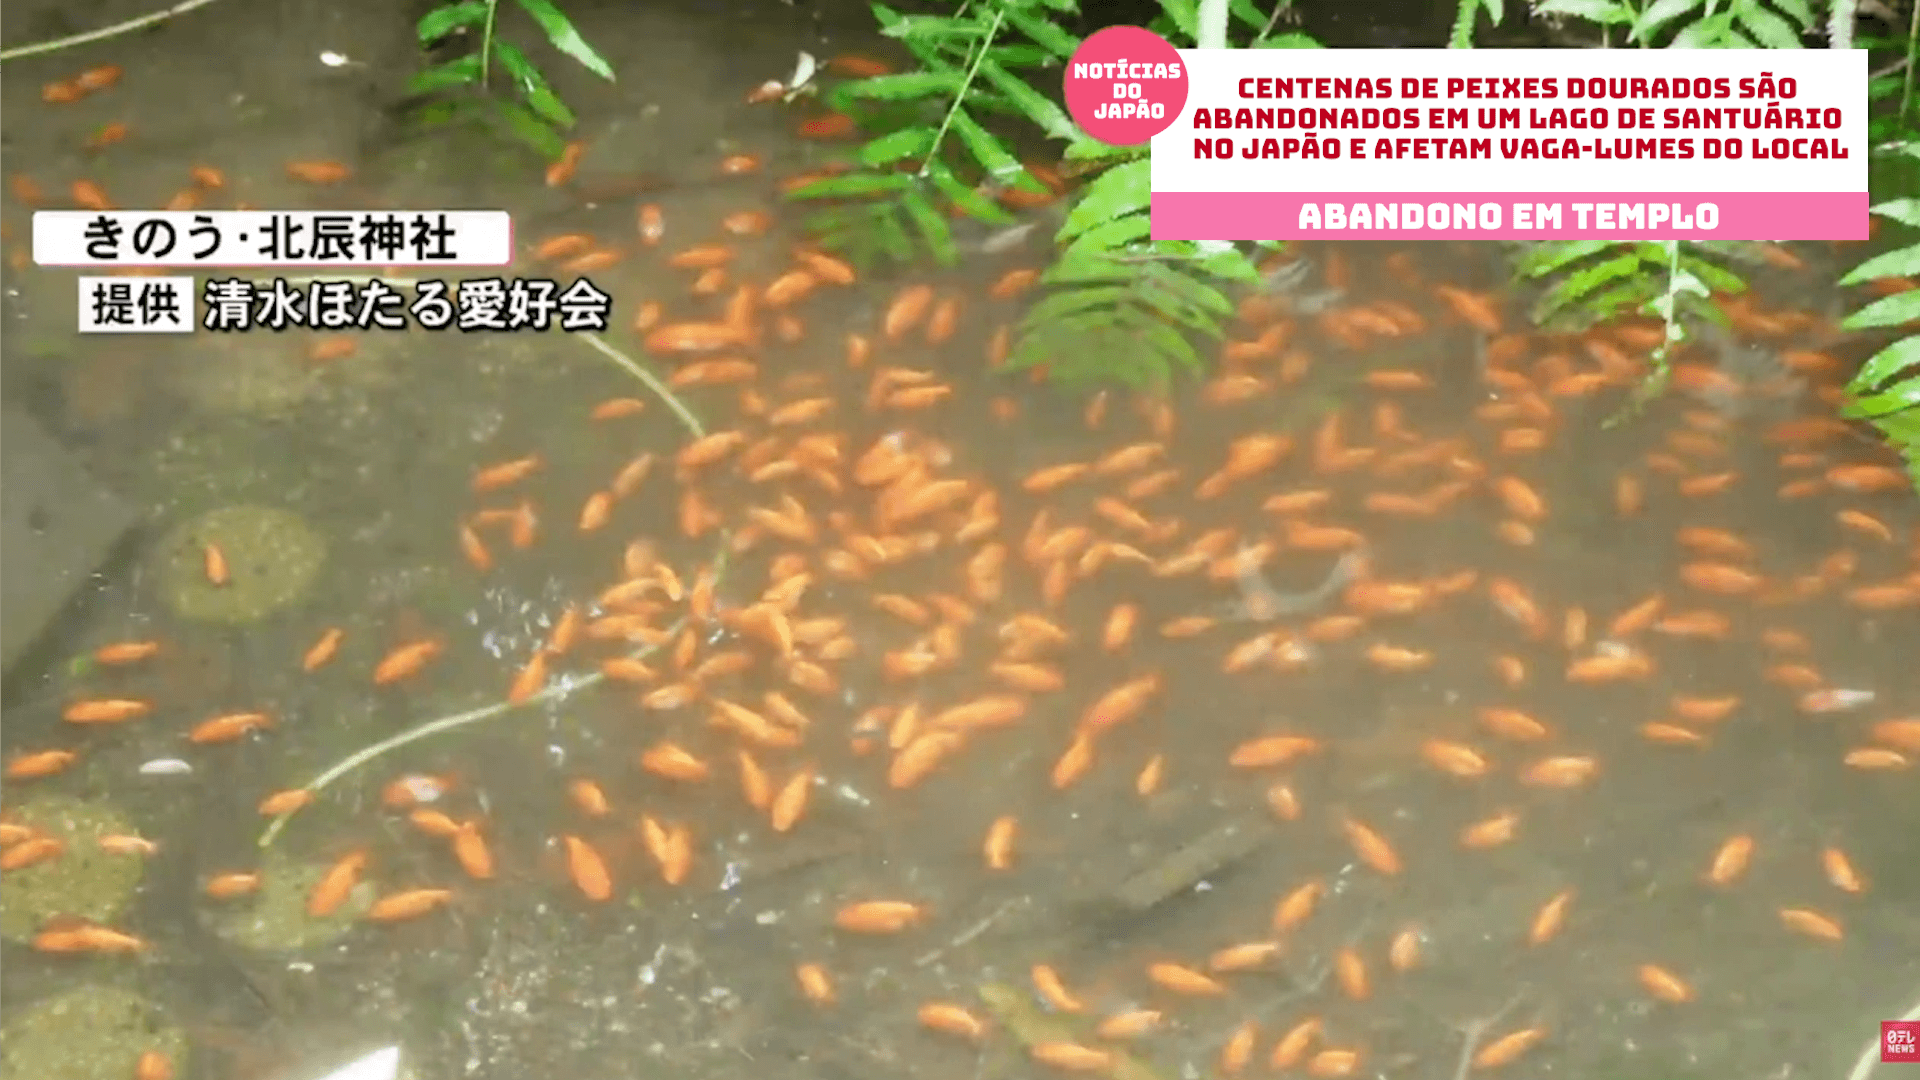 Centenas de peixes dourados são abandonados em um lago de santuário no Japão e afetam vaga-lumes do local